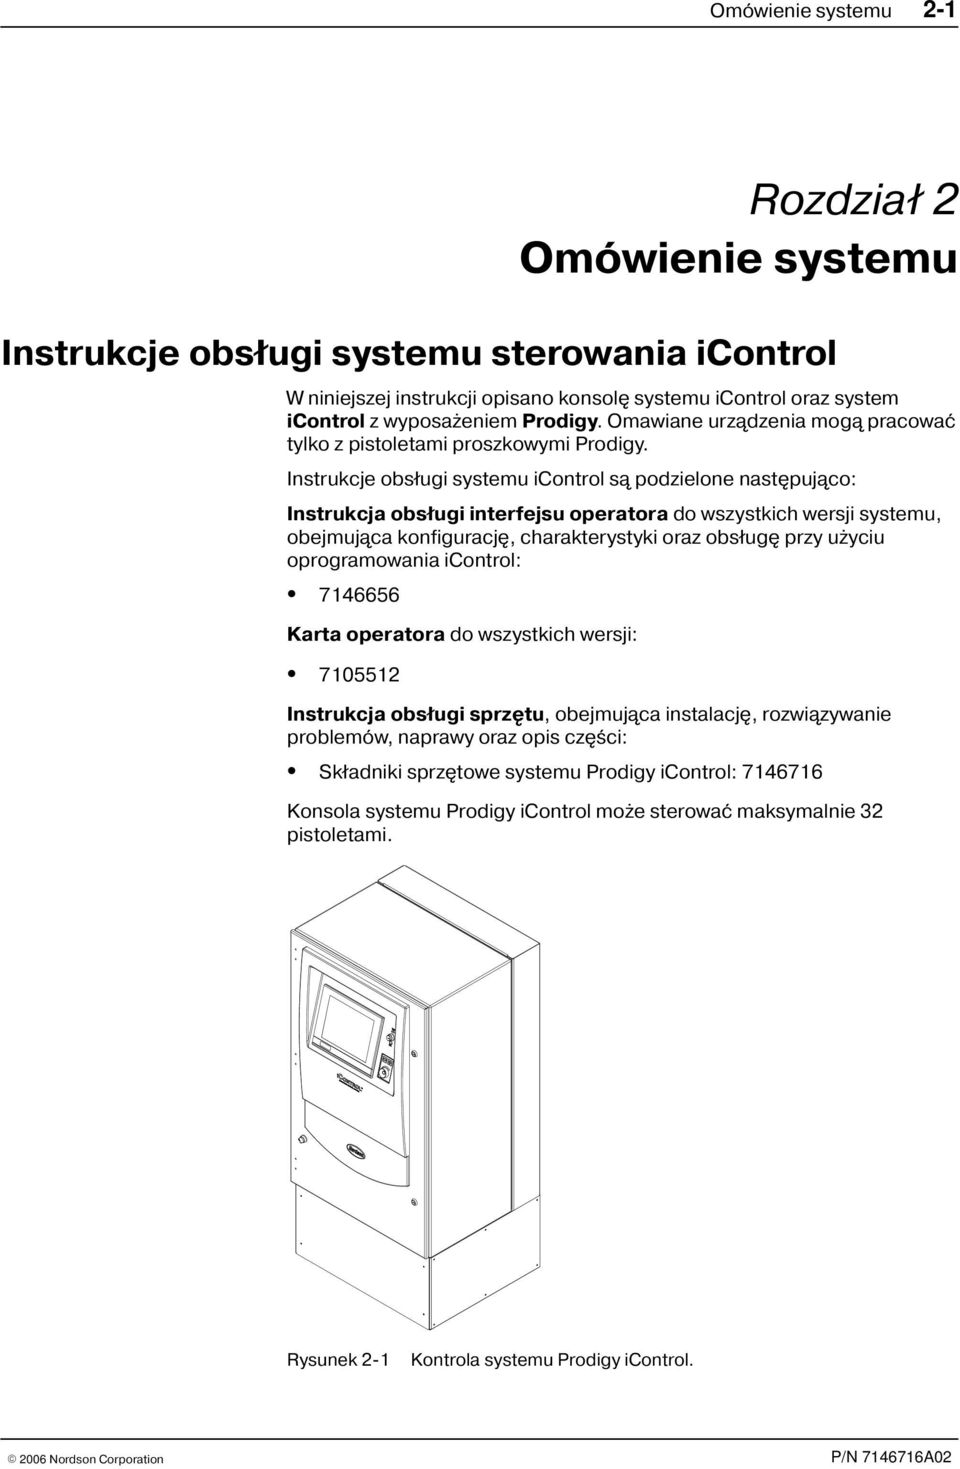 Instrukcje obs³ugi systemu icontrol s¹ podzielone nastêpuj¹co: Instrukcja obs³ugi interfejsu operatora do wszystkich wersji systemu, obejmuj¹ca konfiguracjê, charakterystyki oraz obs³ugê przy u yciu